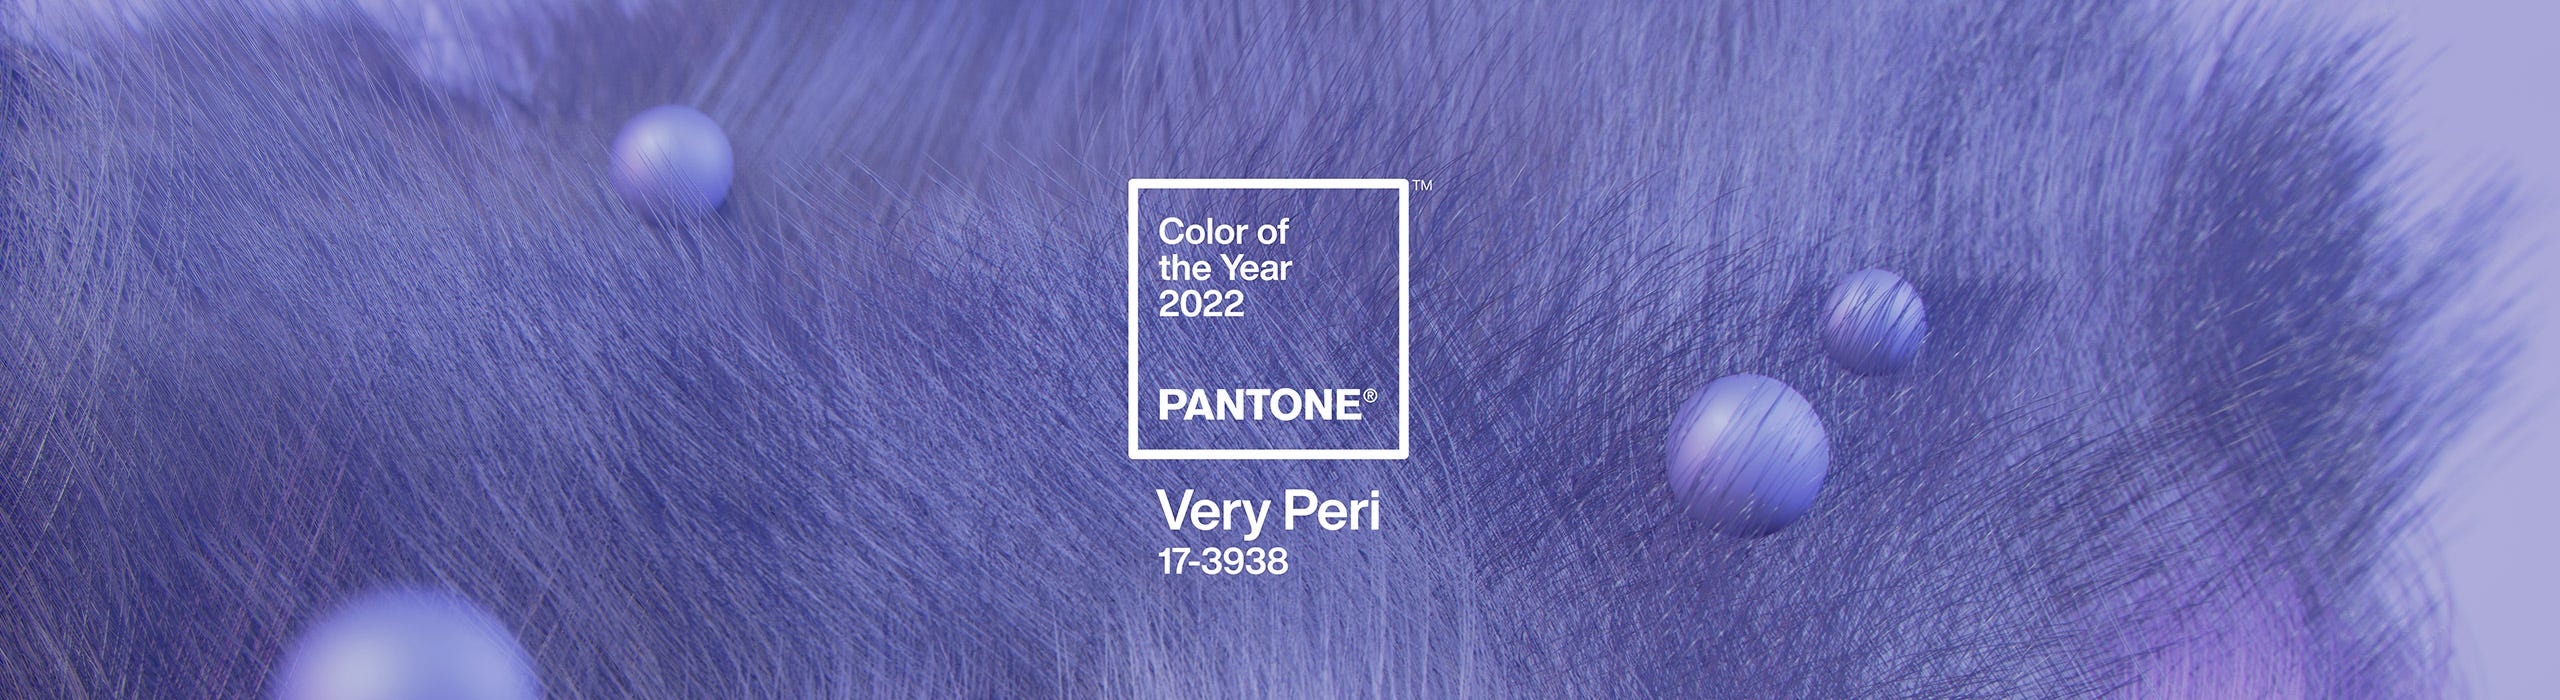 Couleur pantone 2022 Very peri